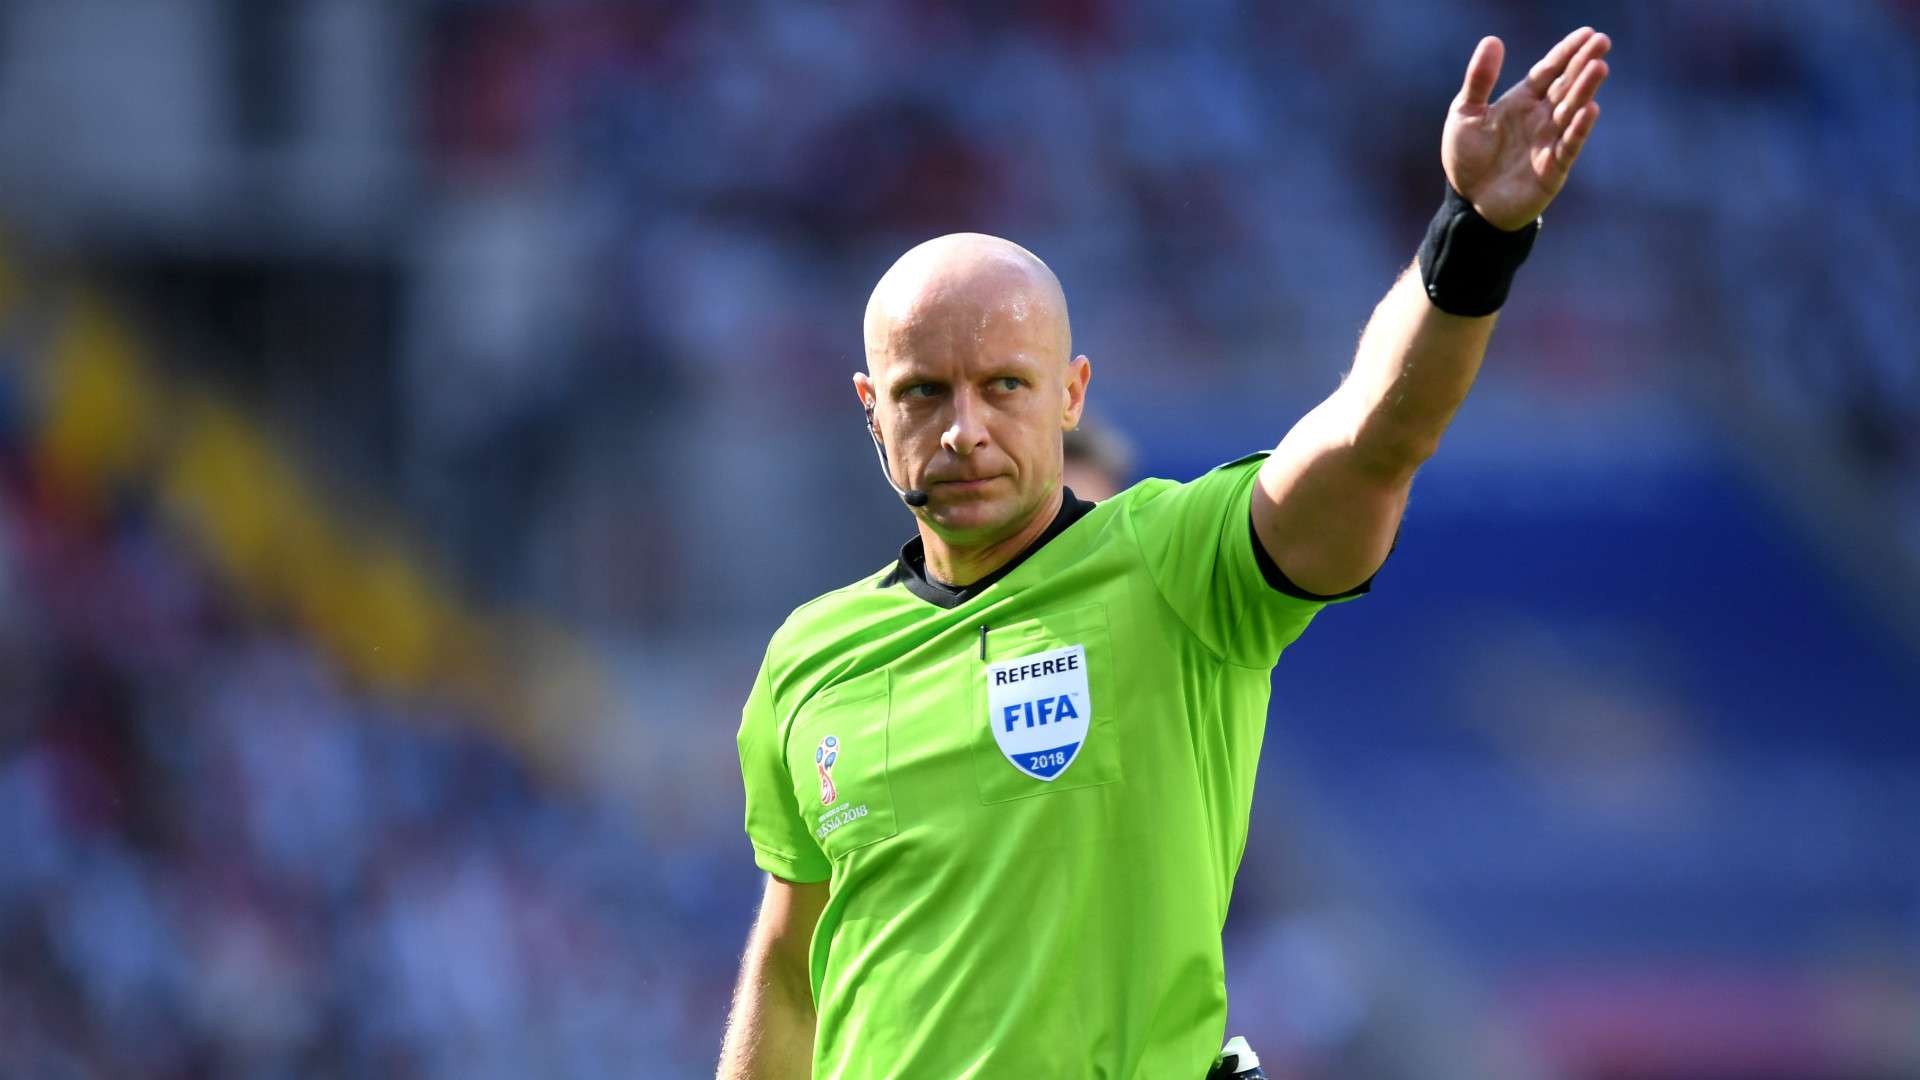 Referee Szymon Marciniak WC 2018